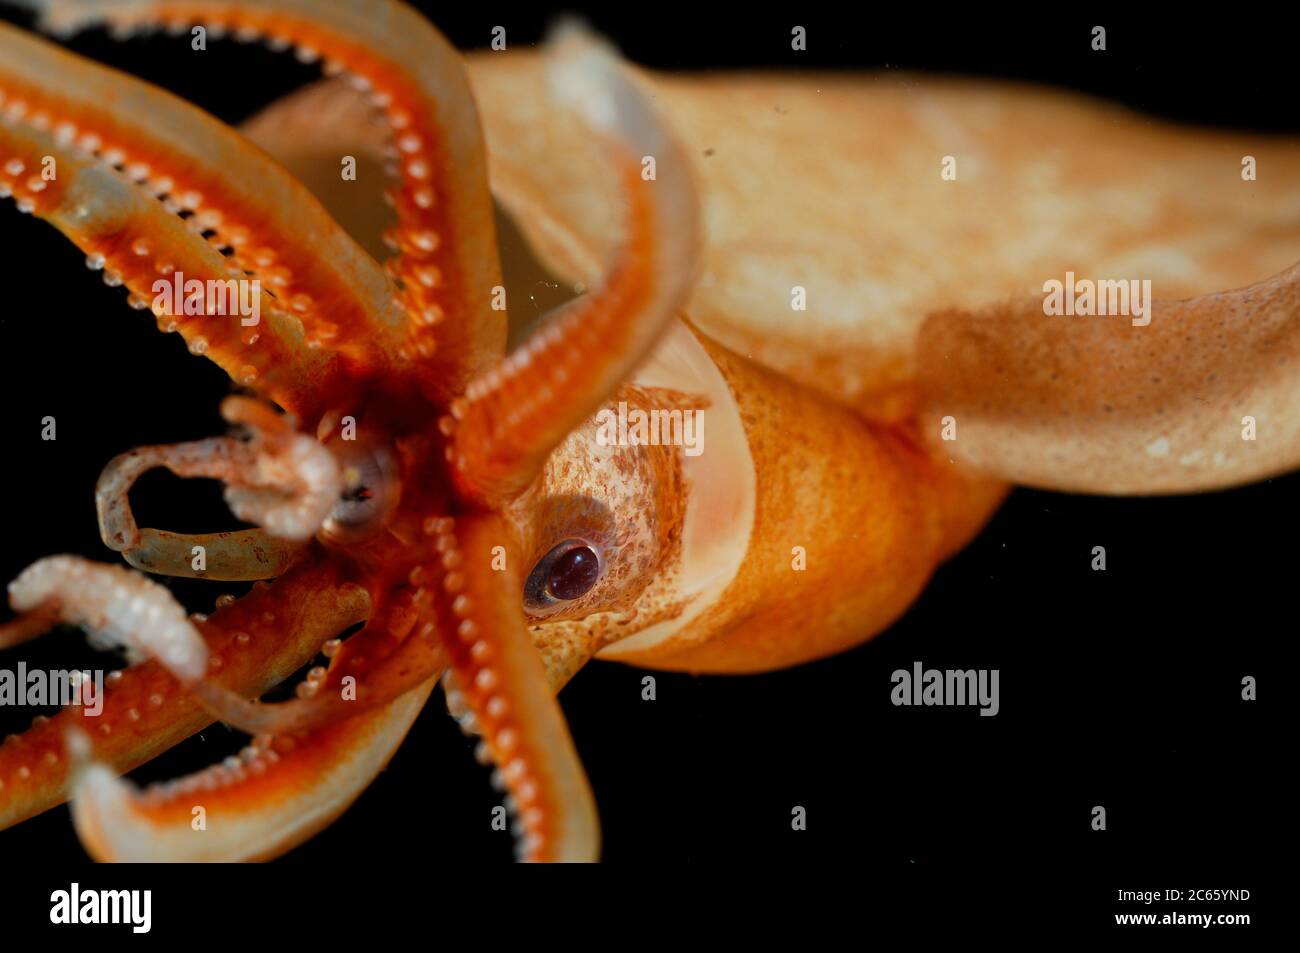 Magnapinna atlantica, anciennement appelé 'Magnapinna sp. A', est une espèce de calmar bigeeux connue de seulement deux spécimens prélevés dans le nord de l'océan Atlantique. Il se caractérise par plusieurs caractéristiques morphologiques uniques : les bases du tentacule sont plus étroites que les bases adjacentes du bras, le tentacule proximal manque de suceurs mais possède des structures glandulaires, et le pigment de l'animal est contenu principalement dans des chromatophores fonctionnelles. [taille d'un organisme : 10 cm] Banque D'Images